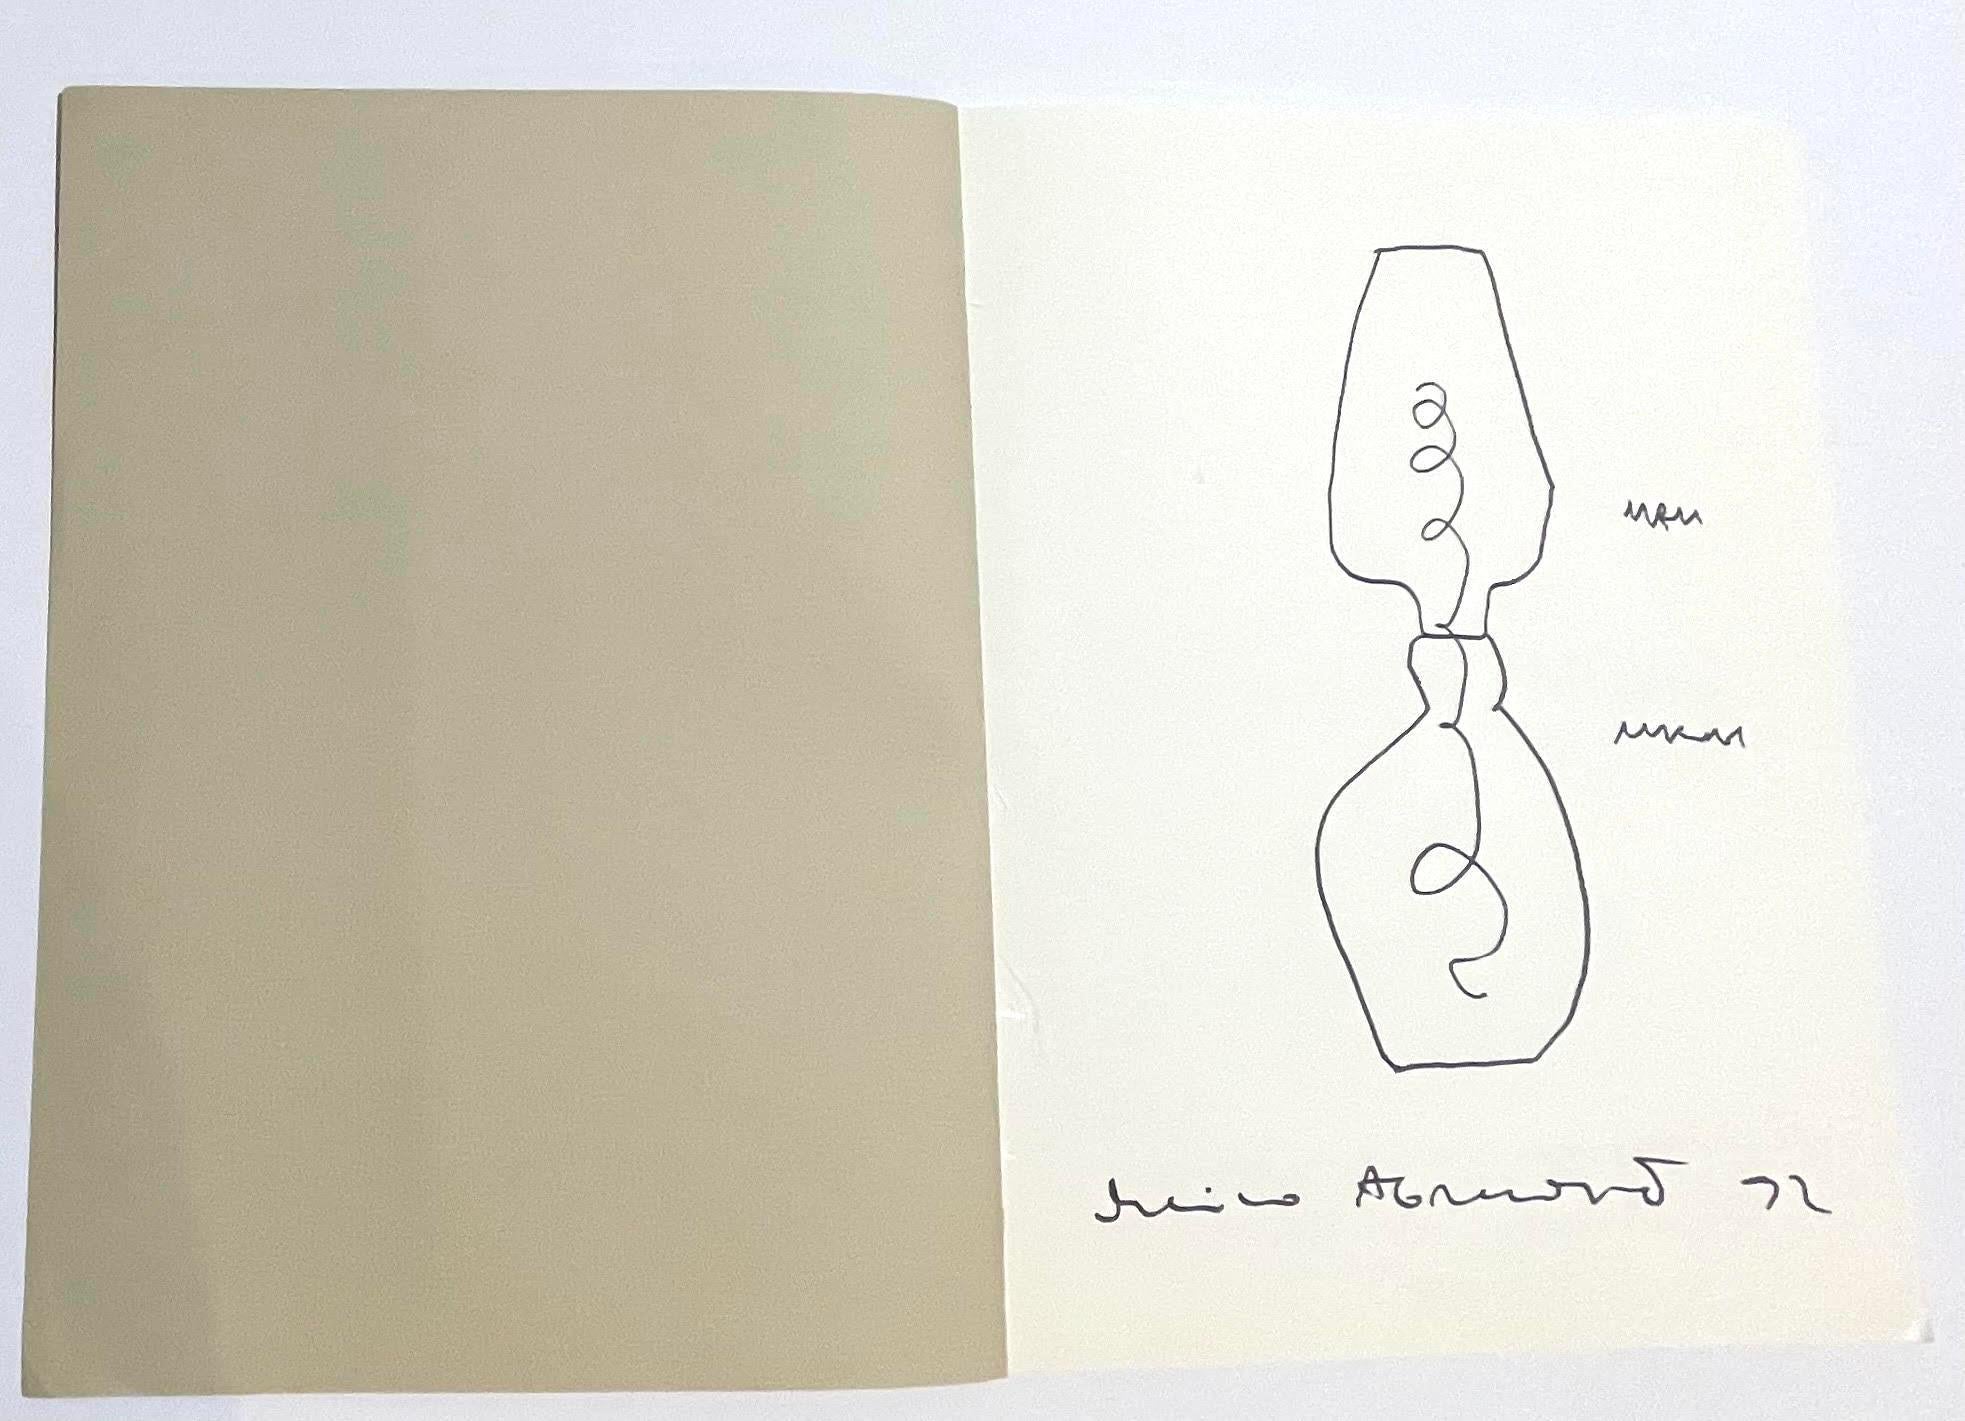 Marina Abramović
Unbetitelte Sanduhrzeichnung, 1992
Zeichnung mit schwarzem Filzstift, handschriftlich signiert und mit Anmerkungen versehen, im Inneren des Katalogs für die Ausstellung Beaux Arts 1992 in Paris
Die Originalzeichnung ist von Marina